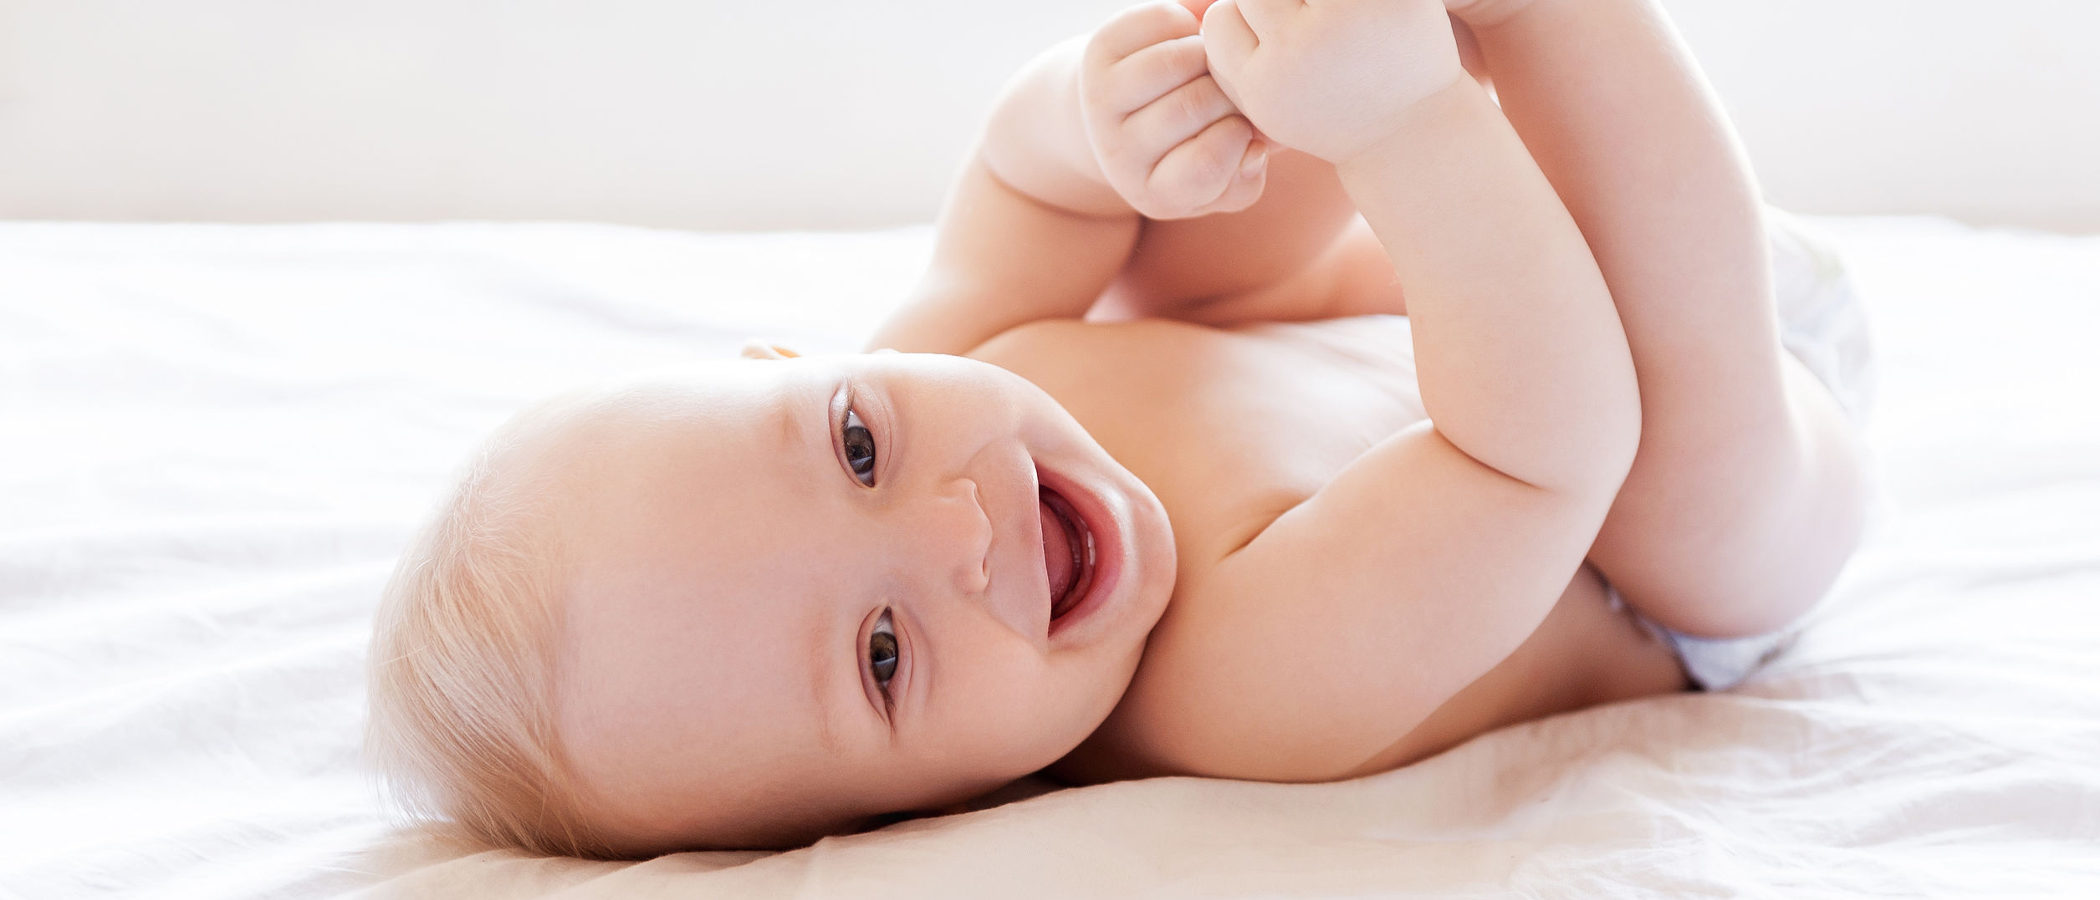 7 curiosidades de los bebés que no te imaginarías